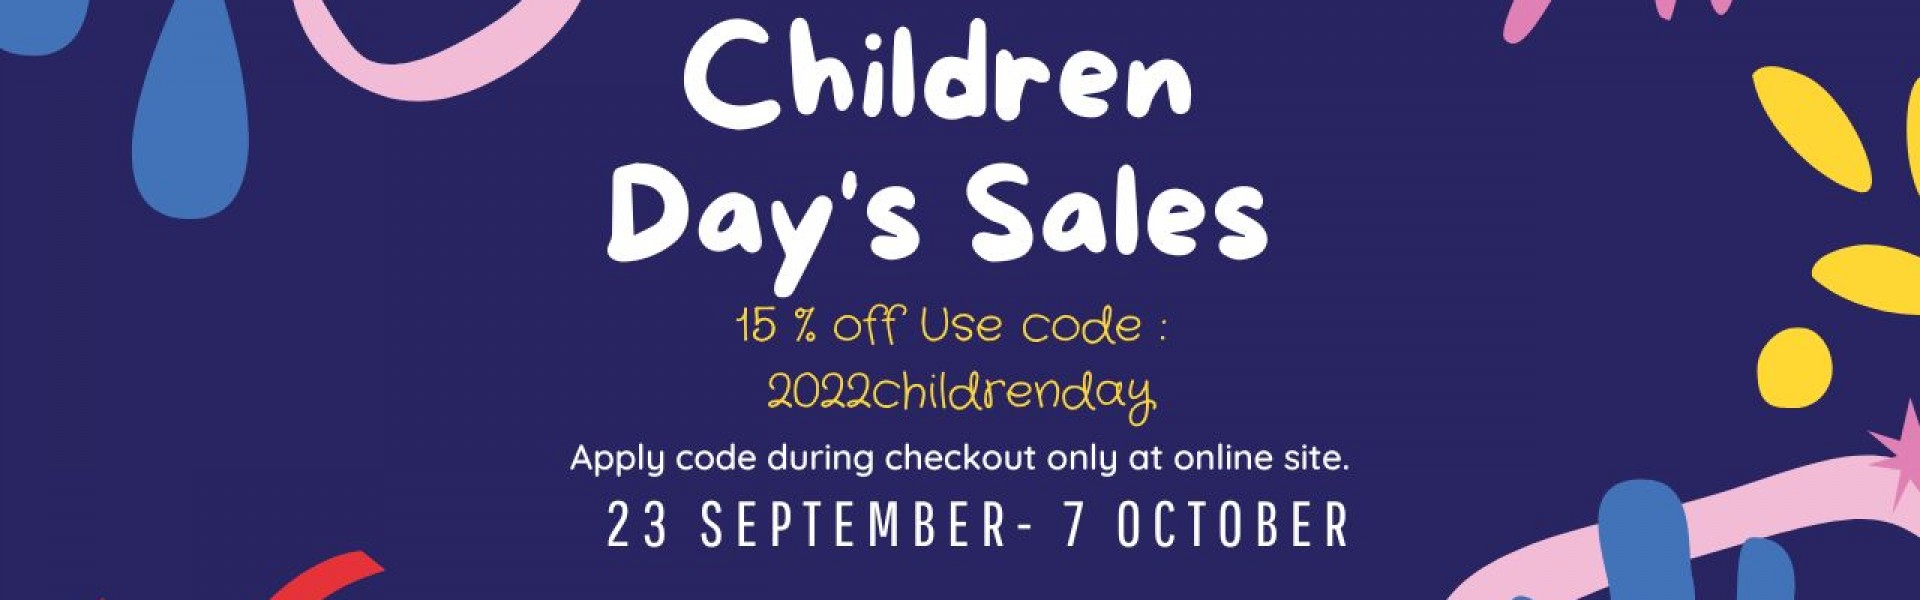 Children Day Sales